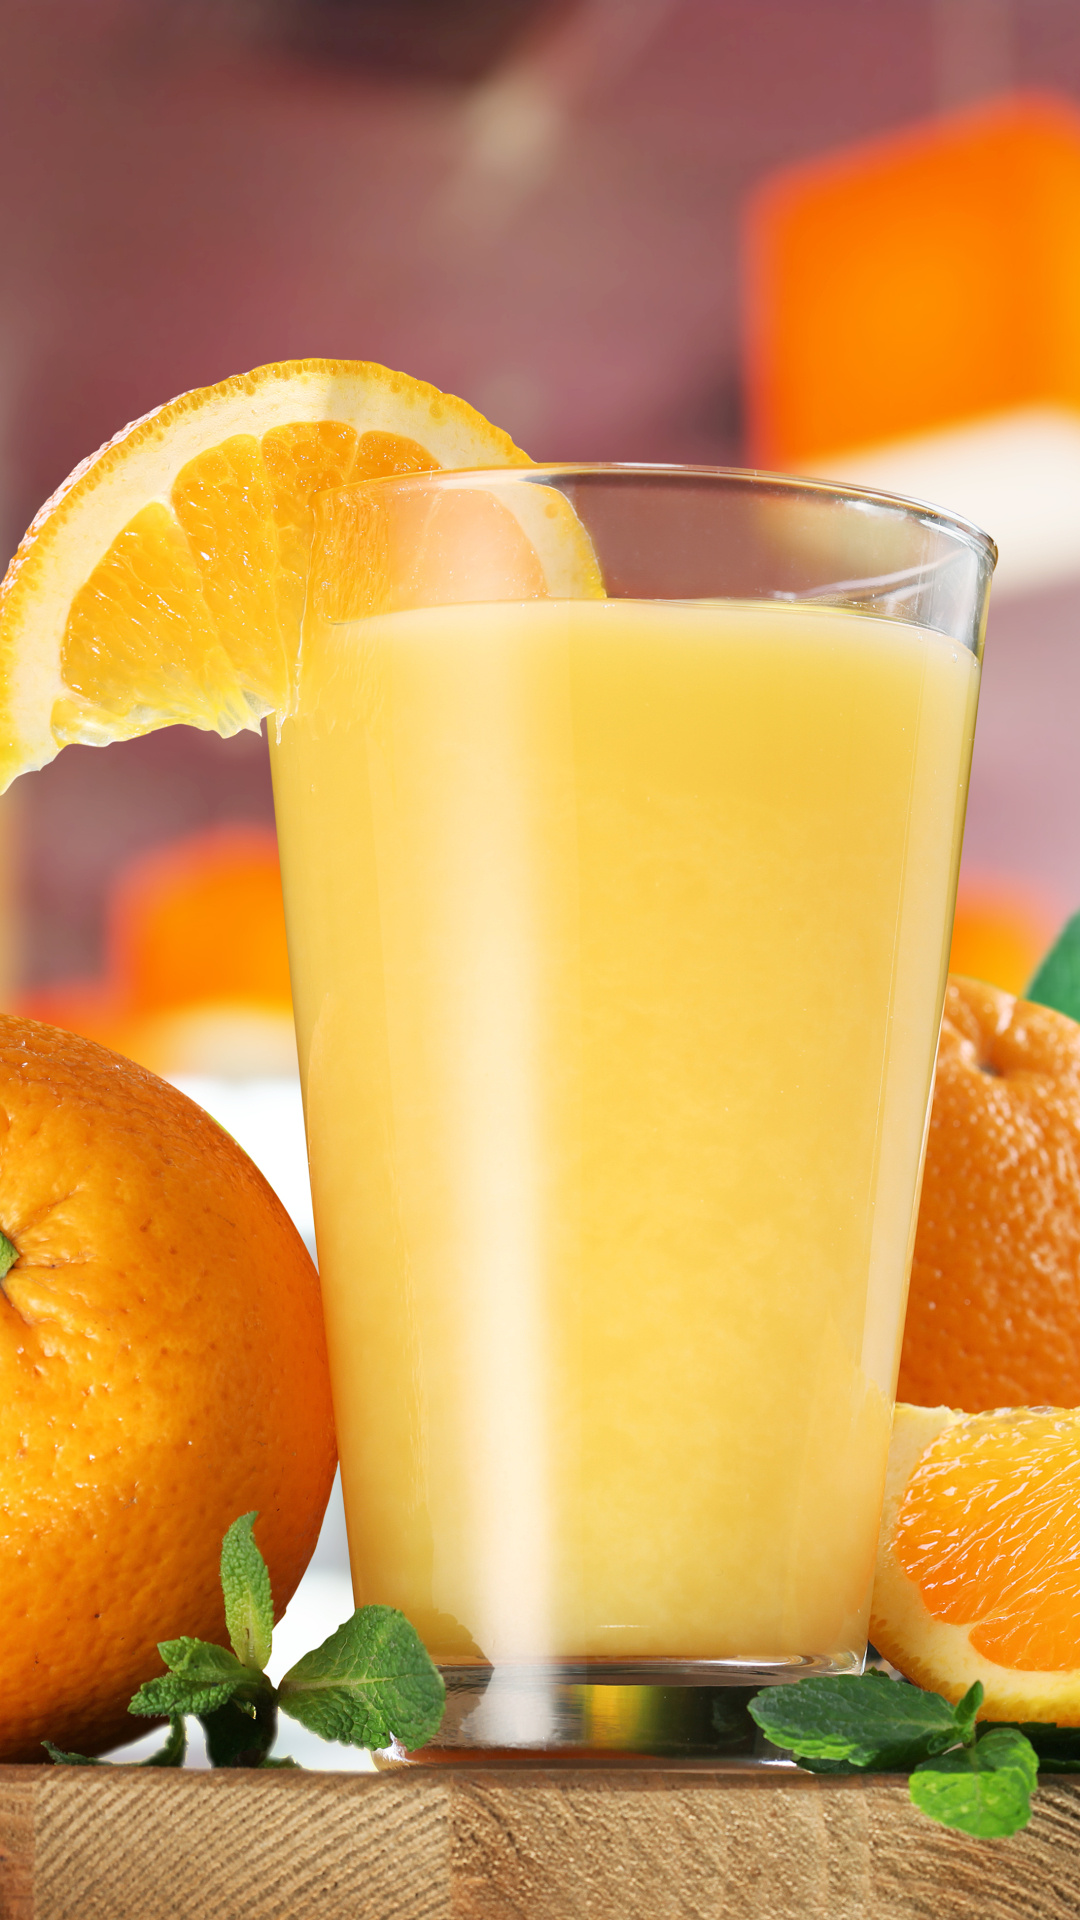 Refreshing juice, Fruity beverage, Vitamin-packed, Tasty sips, 1080x1920 Full HD Phone